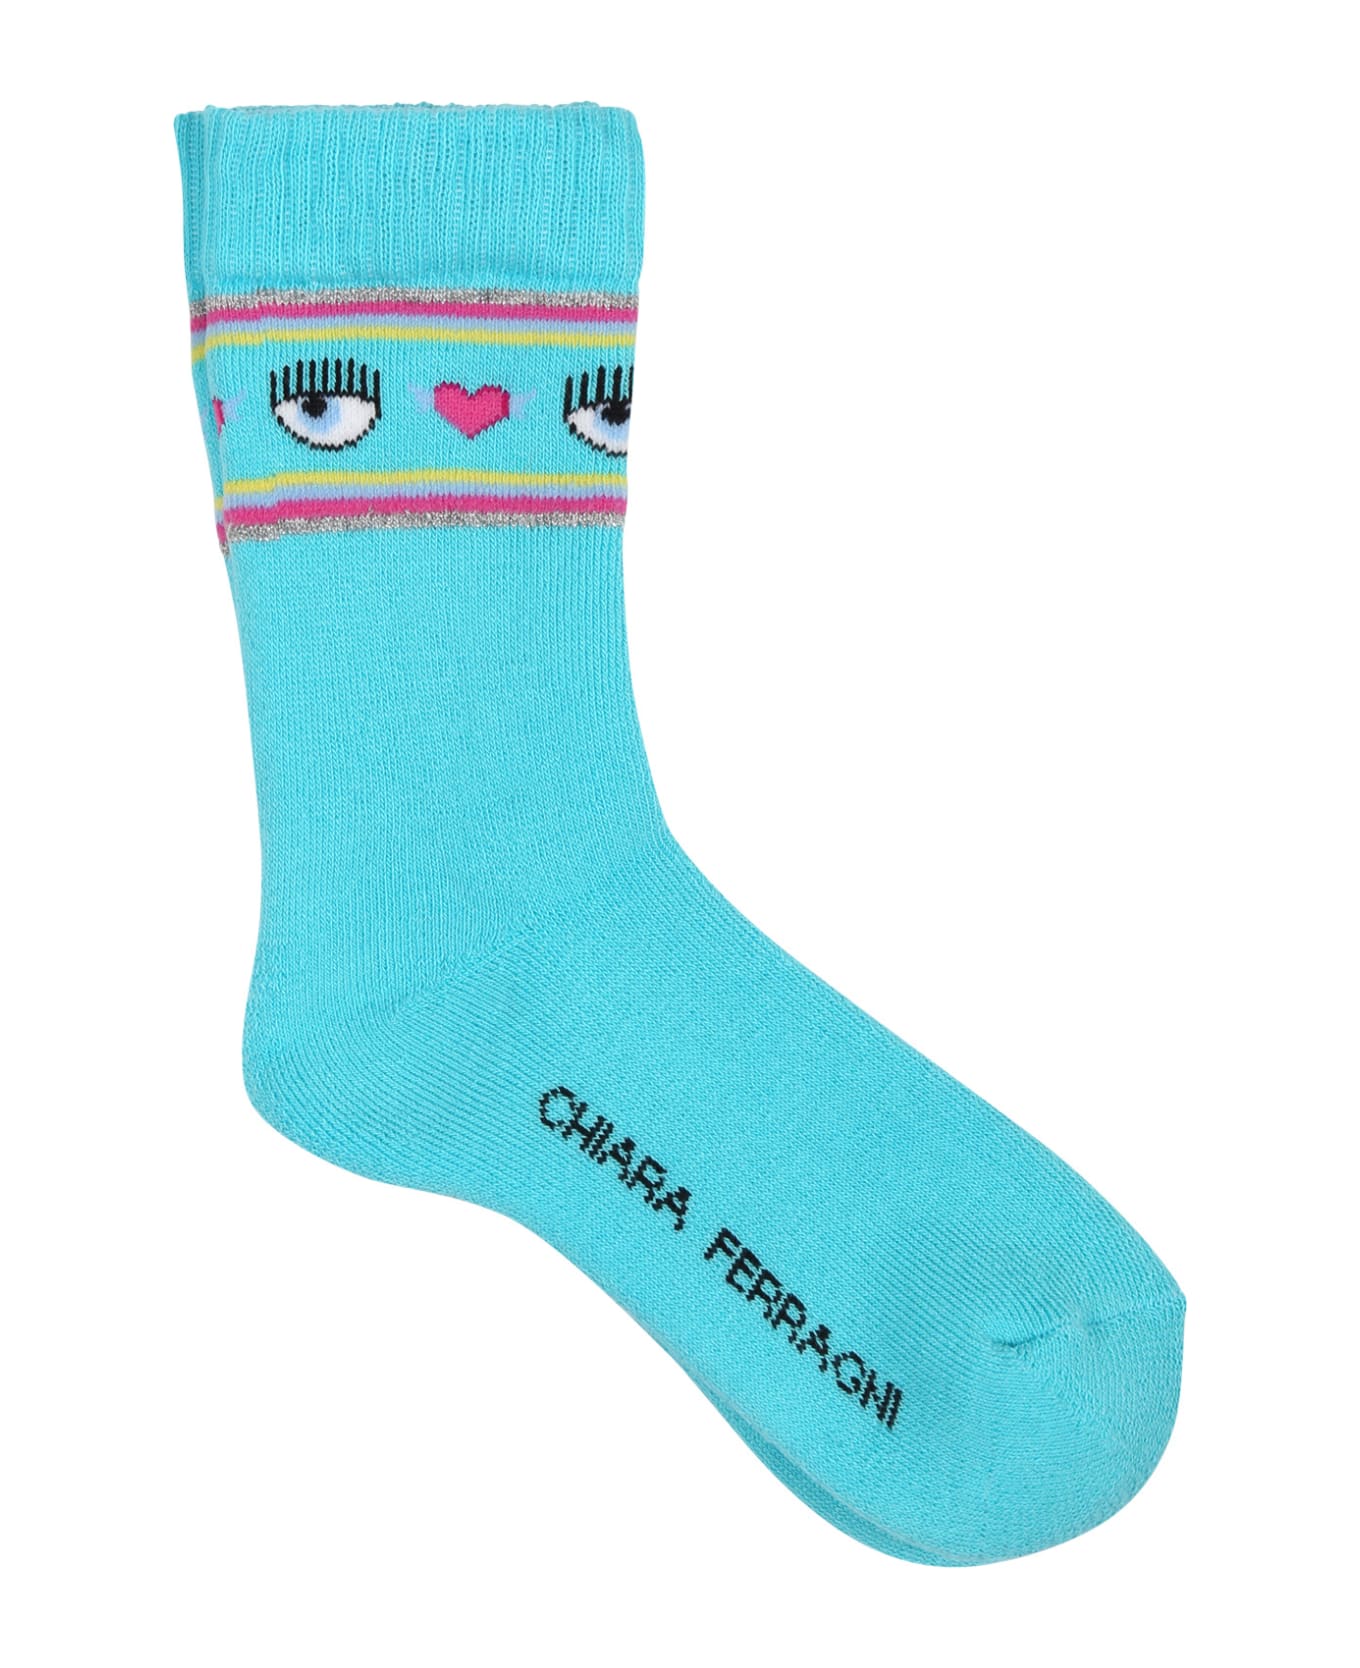 Chiara Ferragni Light Blue Socks For Girl With Flirting Eyes And Hearts - Light Blue アンダーウェア